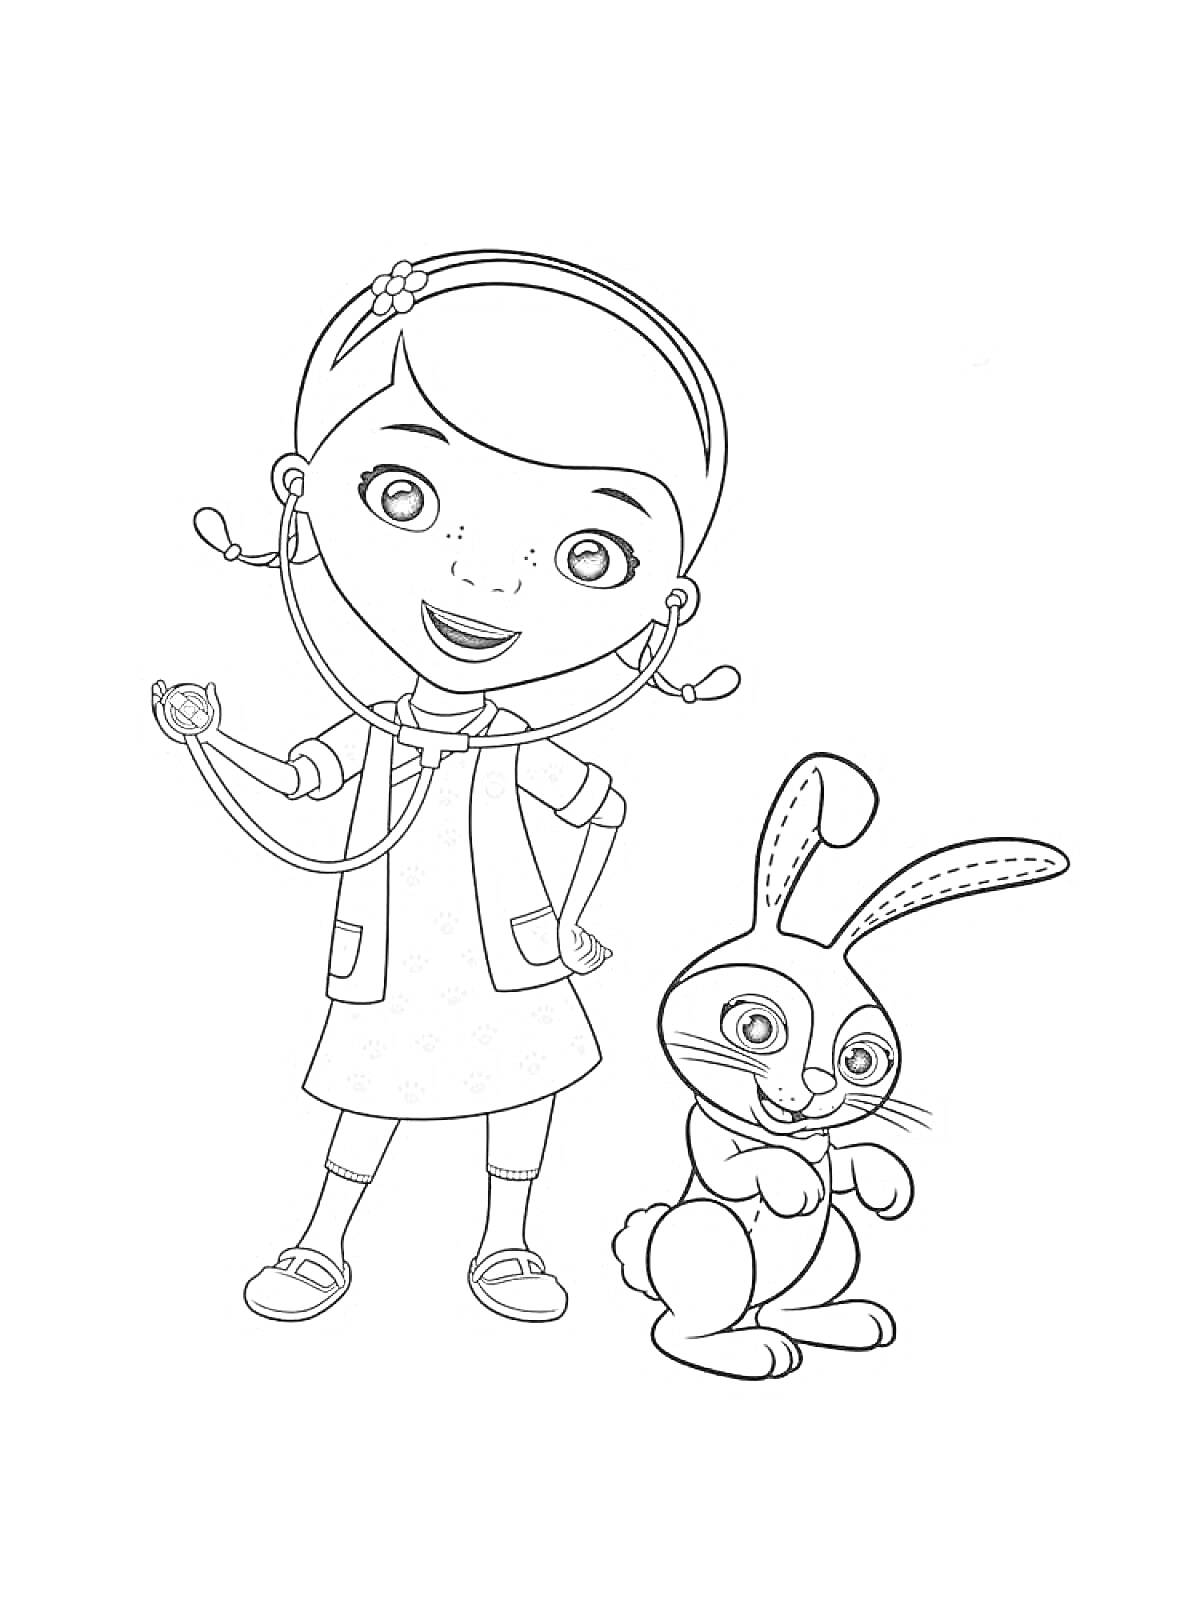 Раскраска Доктор Плюшева со стетоскопом и кролик